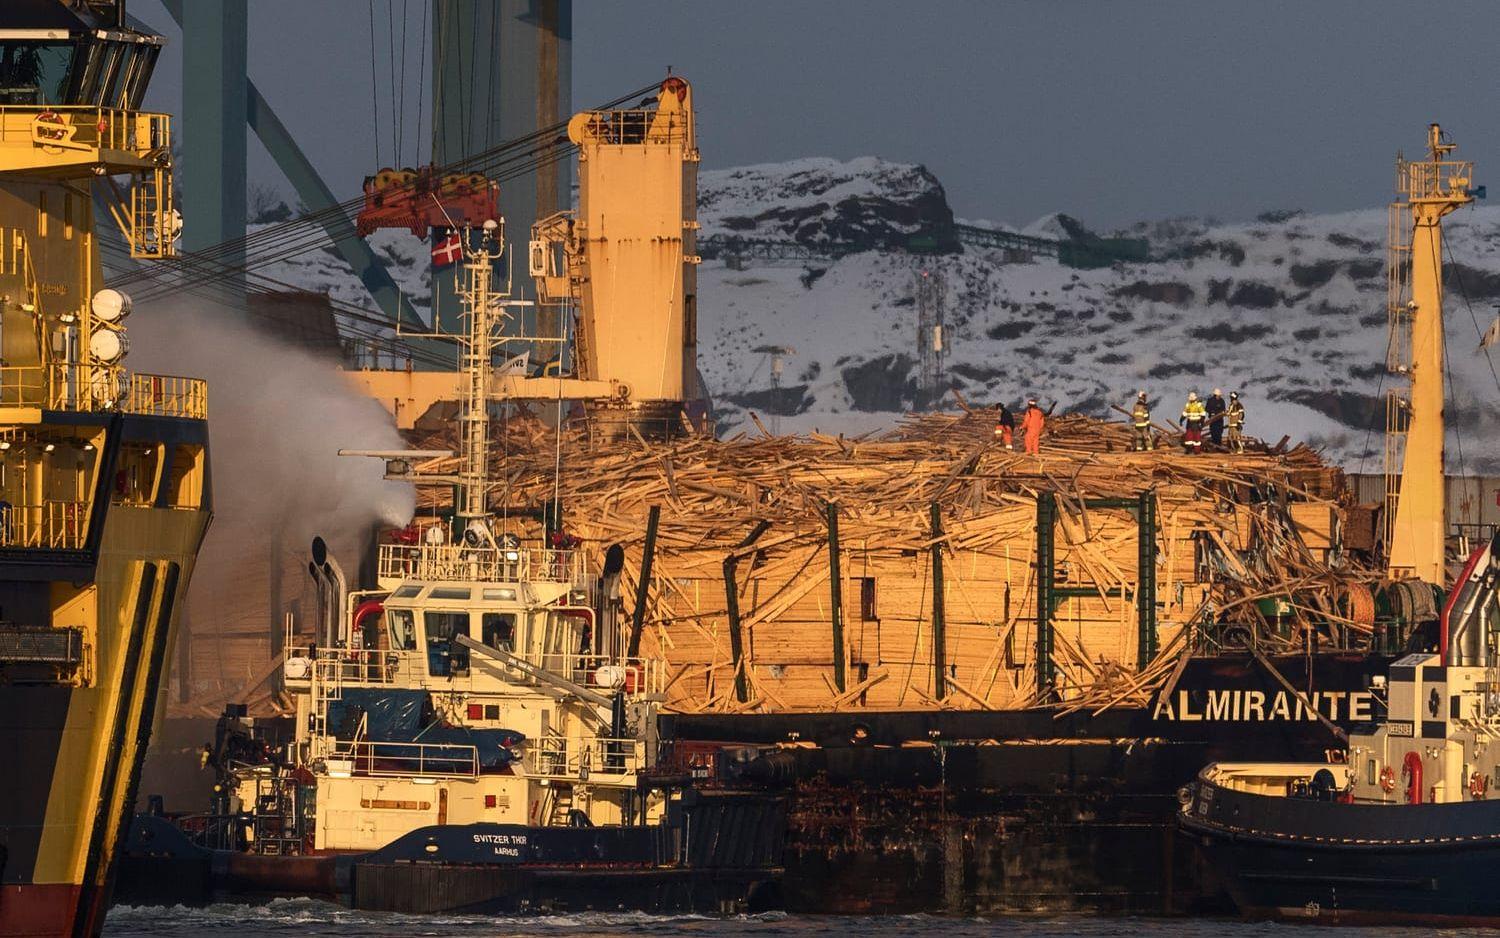 Efter att ha brunnit till havs i en vecka flyttades fartyget Almirante Storni in i Skandiahamnen. Vid kajen tog räddningstjänsten över ansvaret.